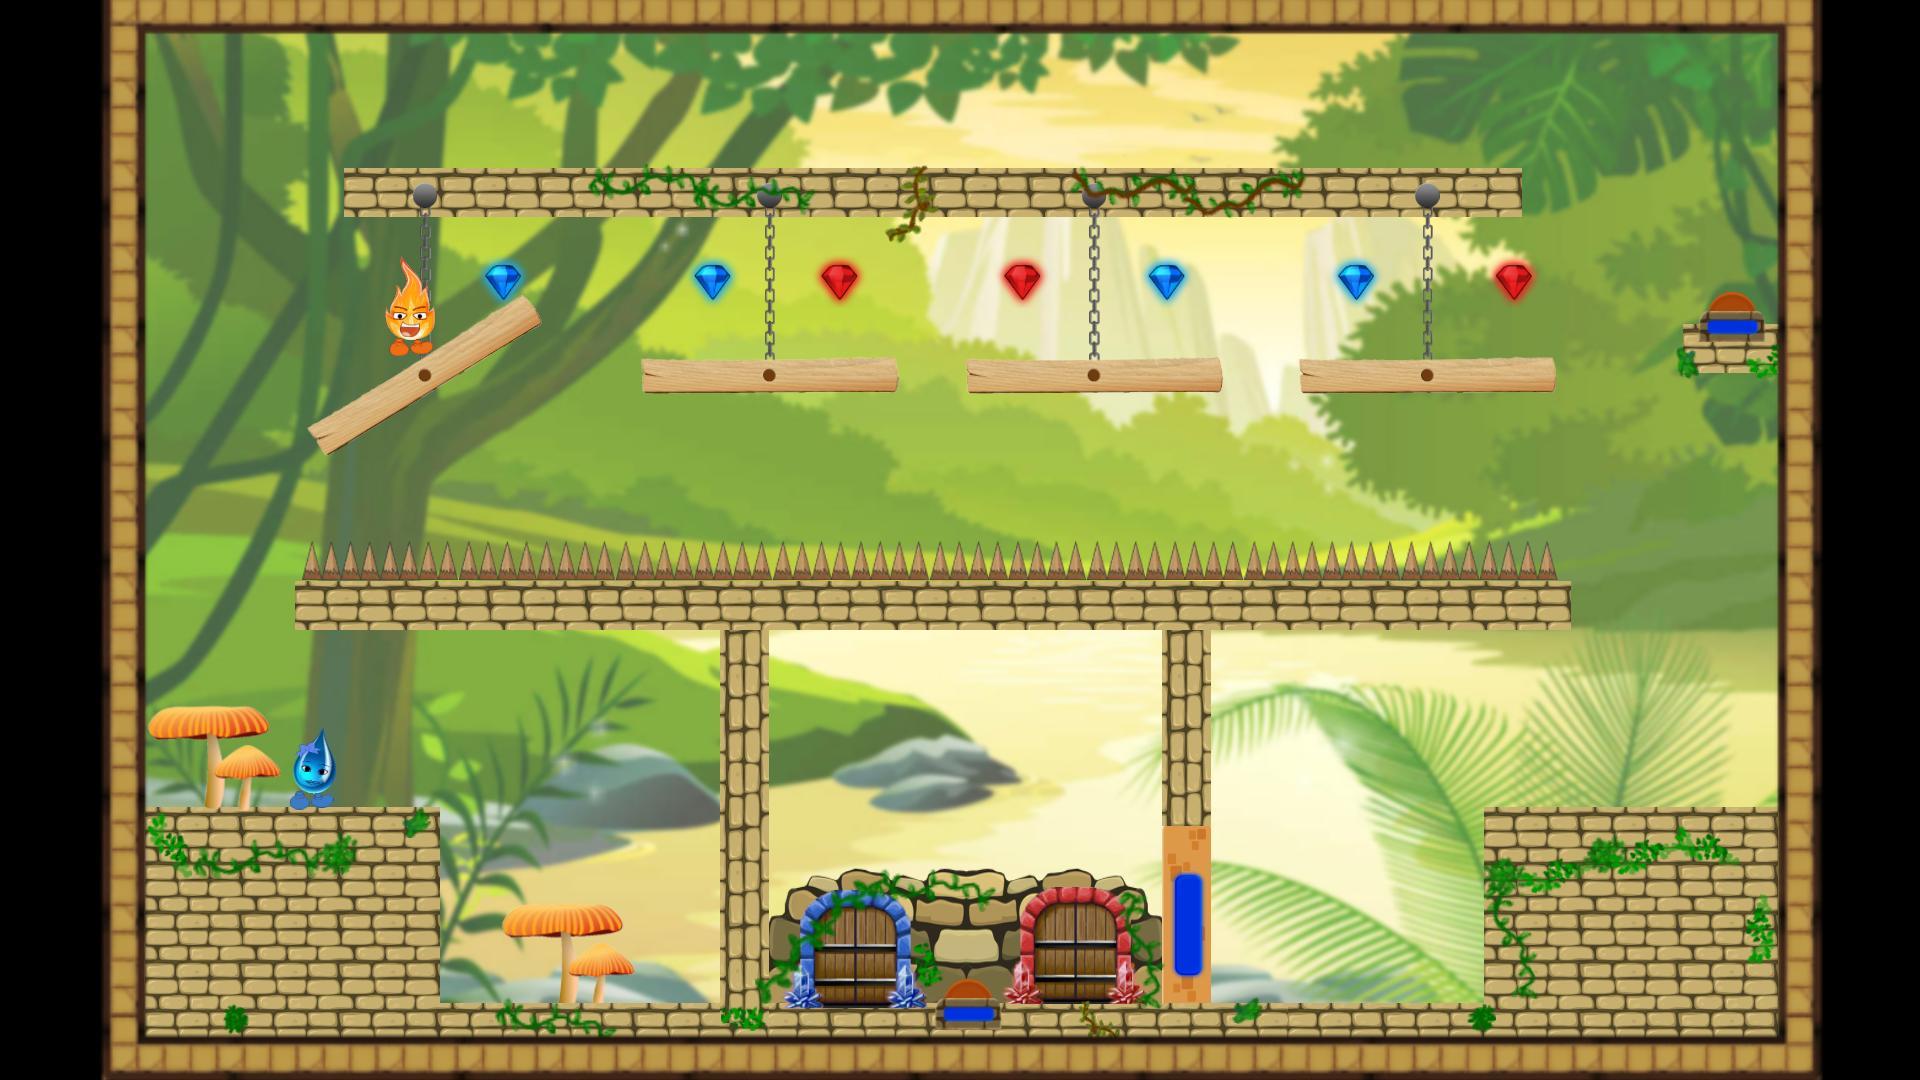 Fogo e água: jogo online – Apps no Google Play